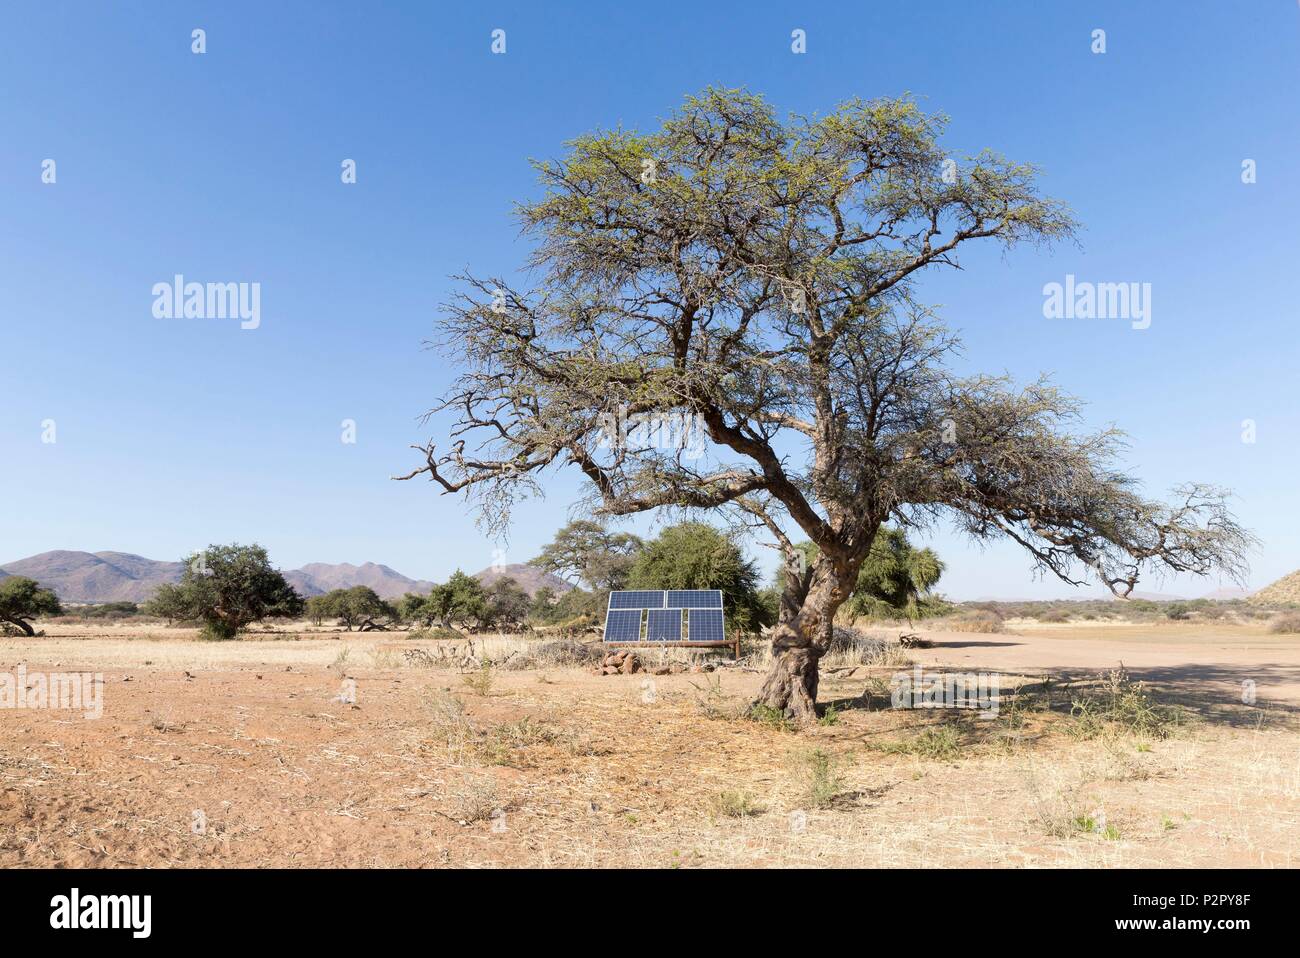 Sudáfrica, el desierto de Kalahari, paneles solares para alimentar una bomba que trae agua en un orificio de agua Foto de stock